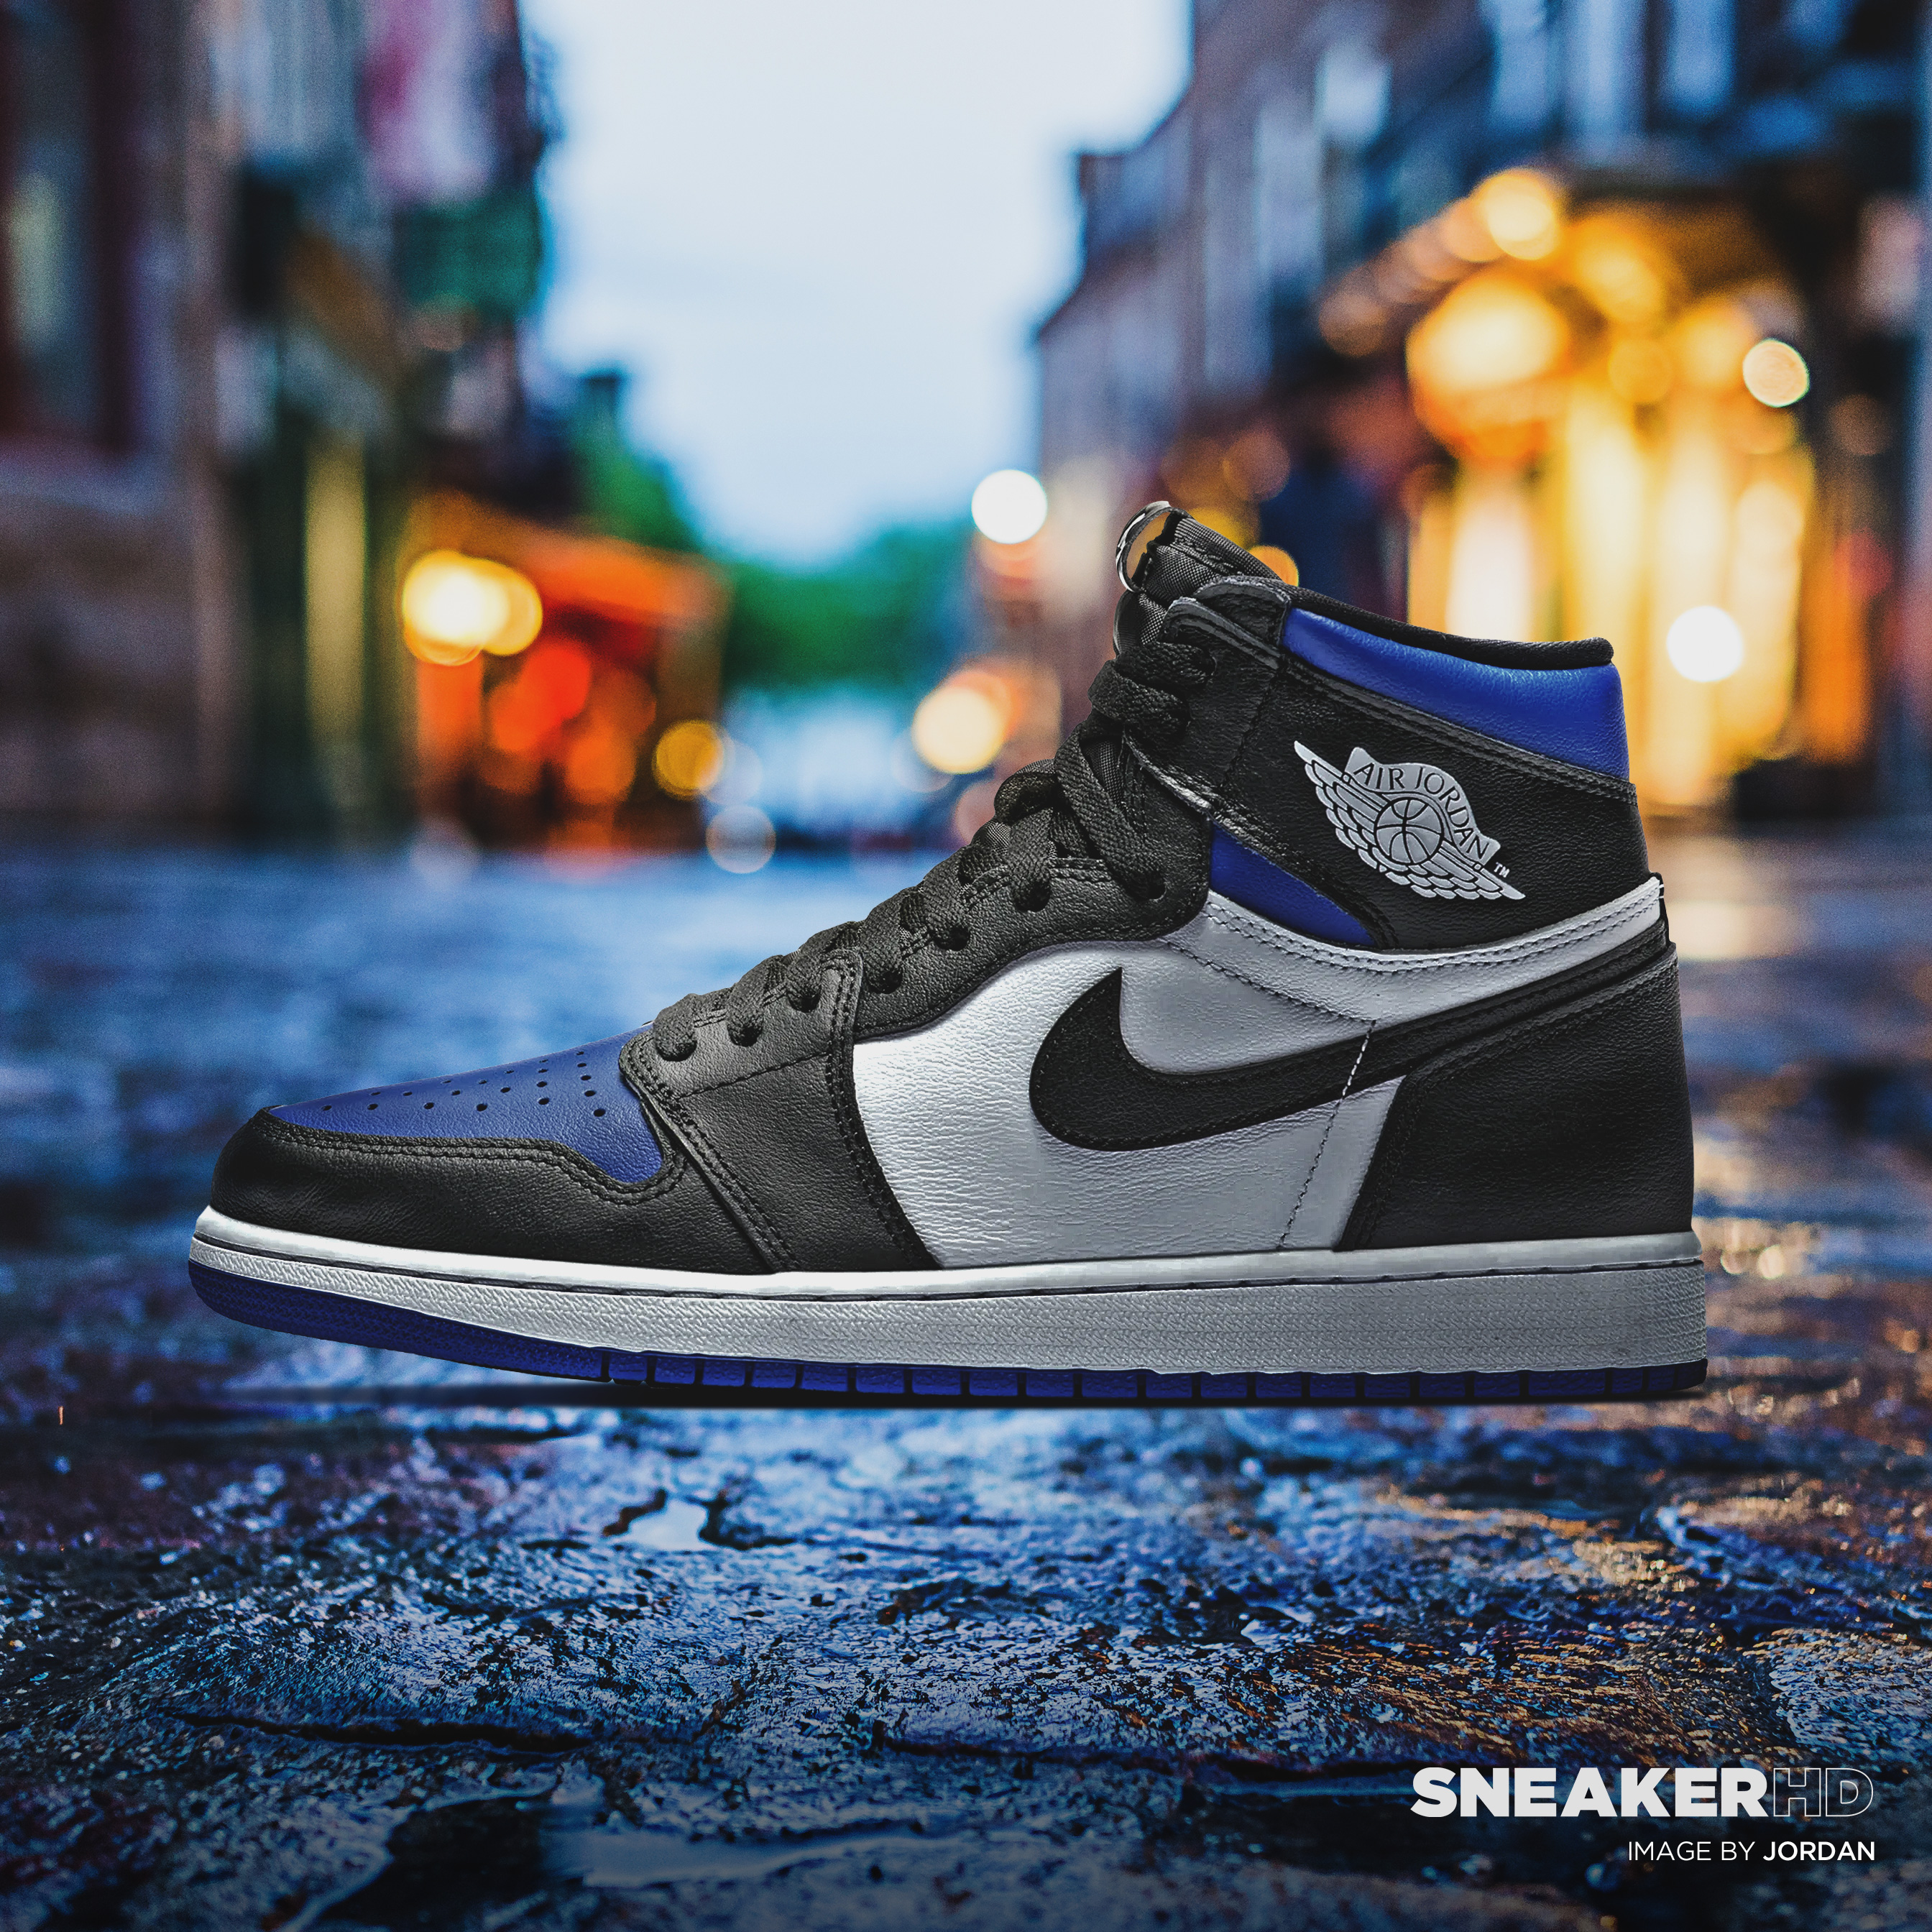 SneakerHDWallpapers.com – Your favorite sneakers in 4K, Retina, Mobile ...